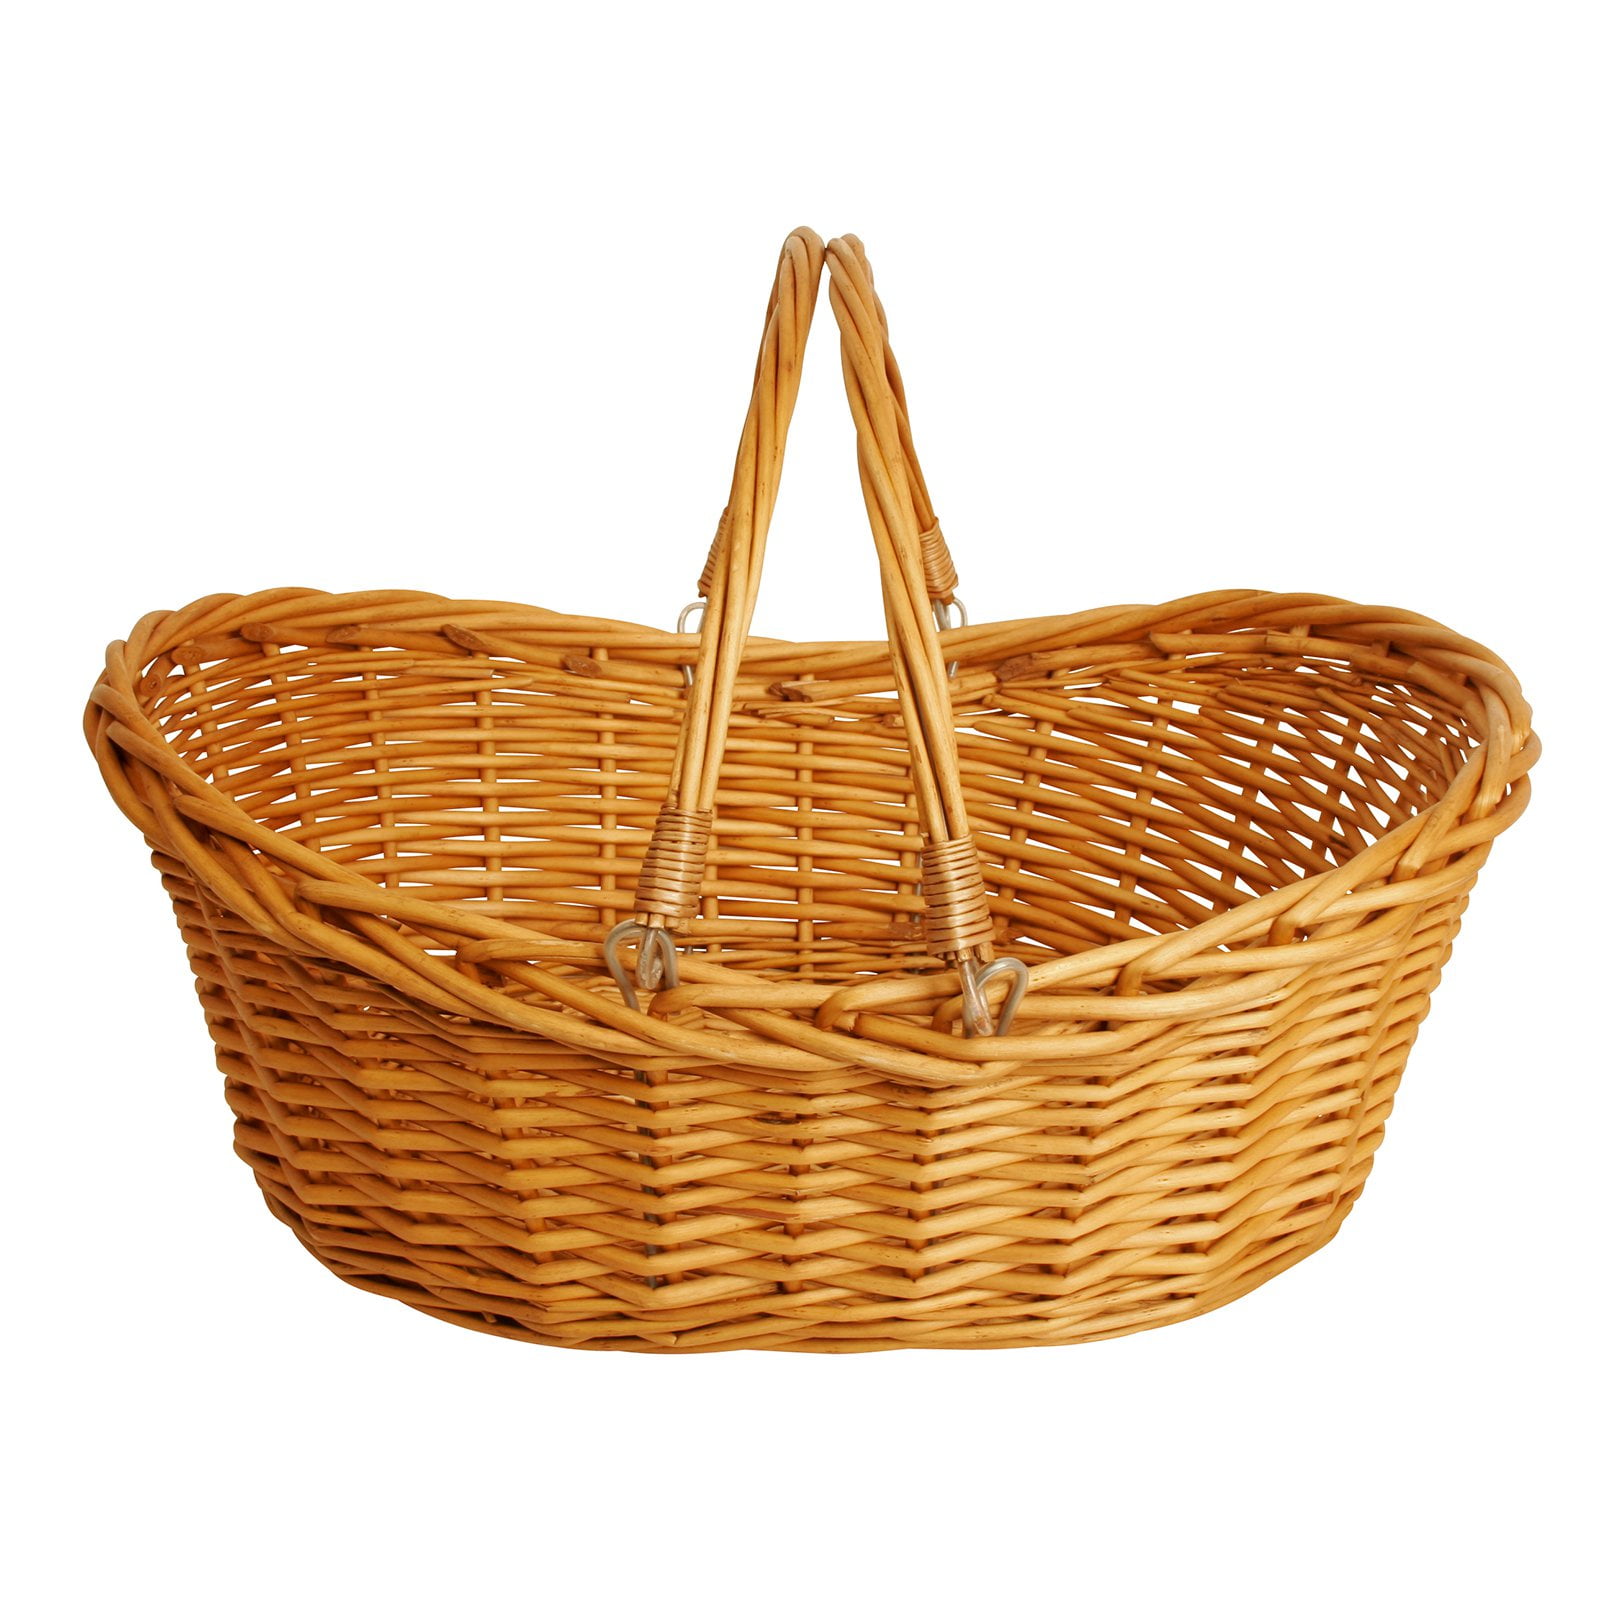 Household Essentials Open Top Market Basket with Handles - Walmart.com